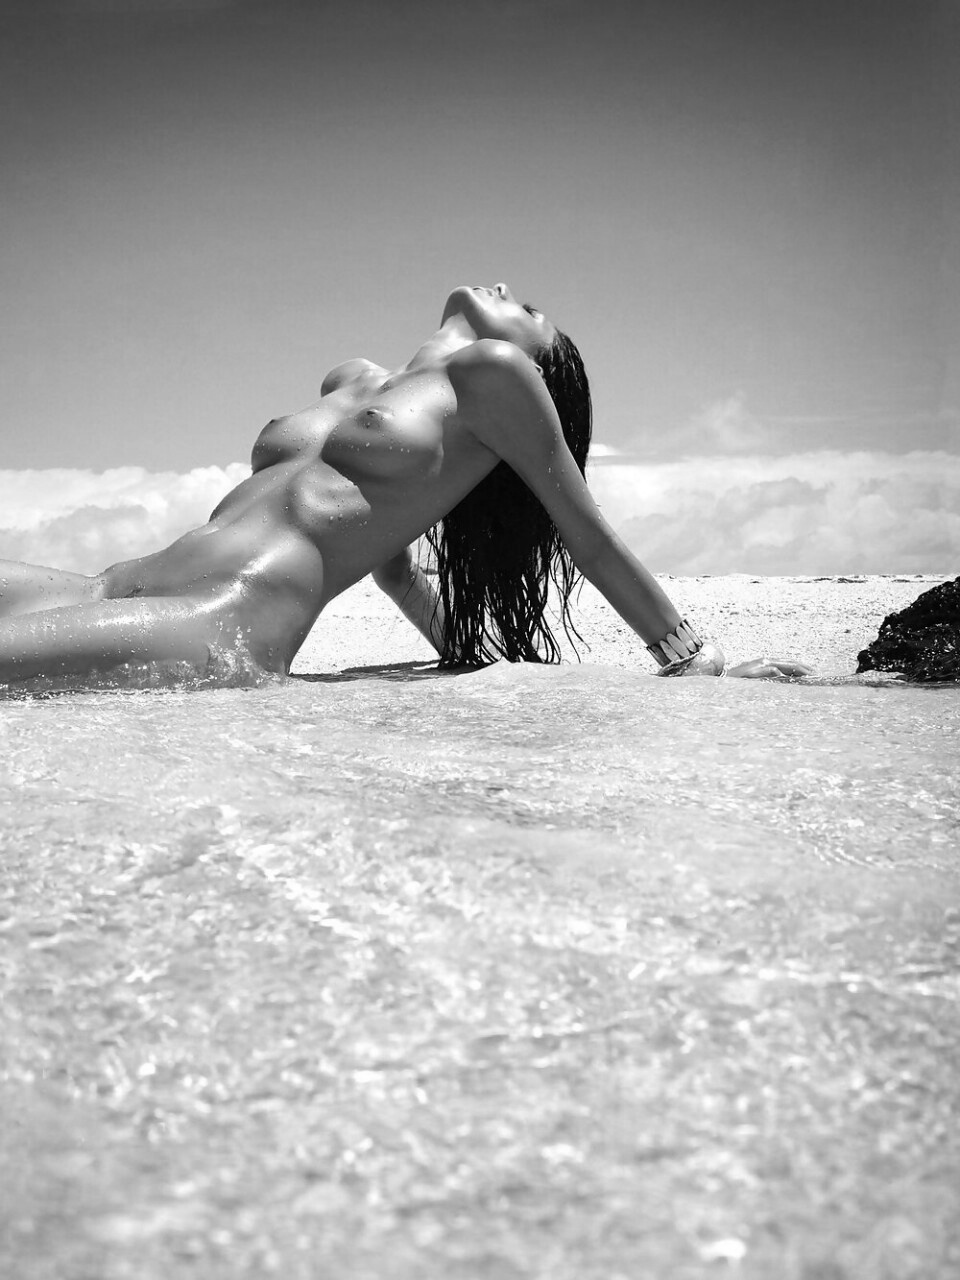 Здоровые титьки брюнетки и голый пляж бикини 16 фото эротики